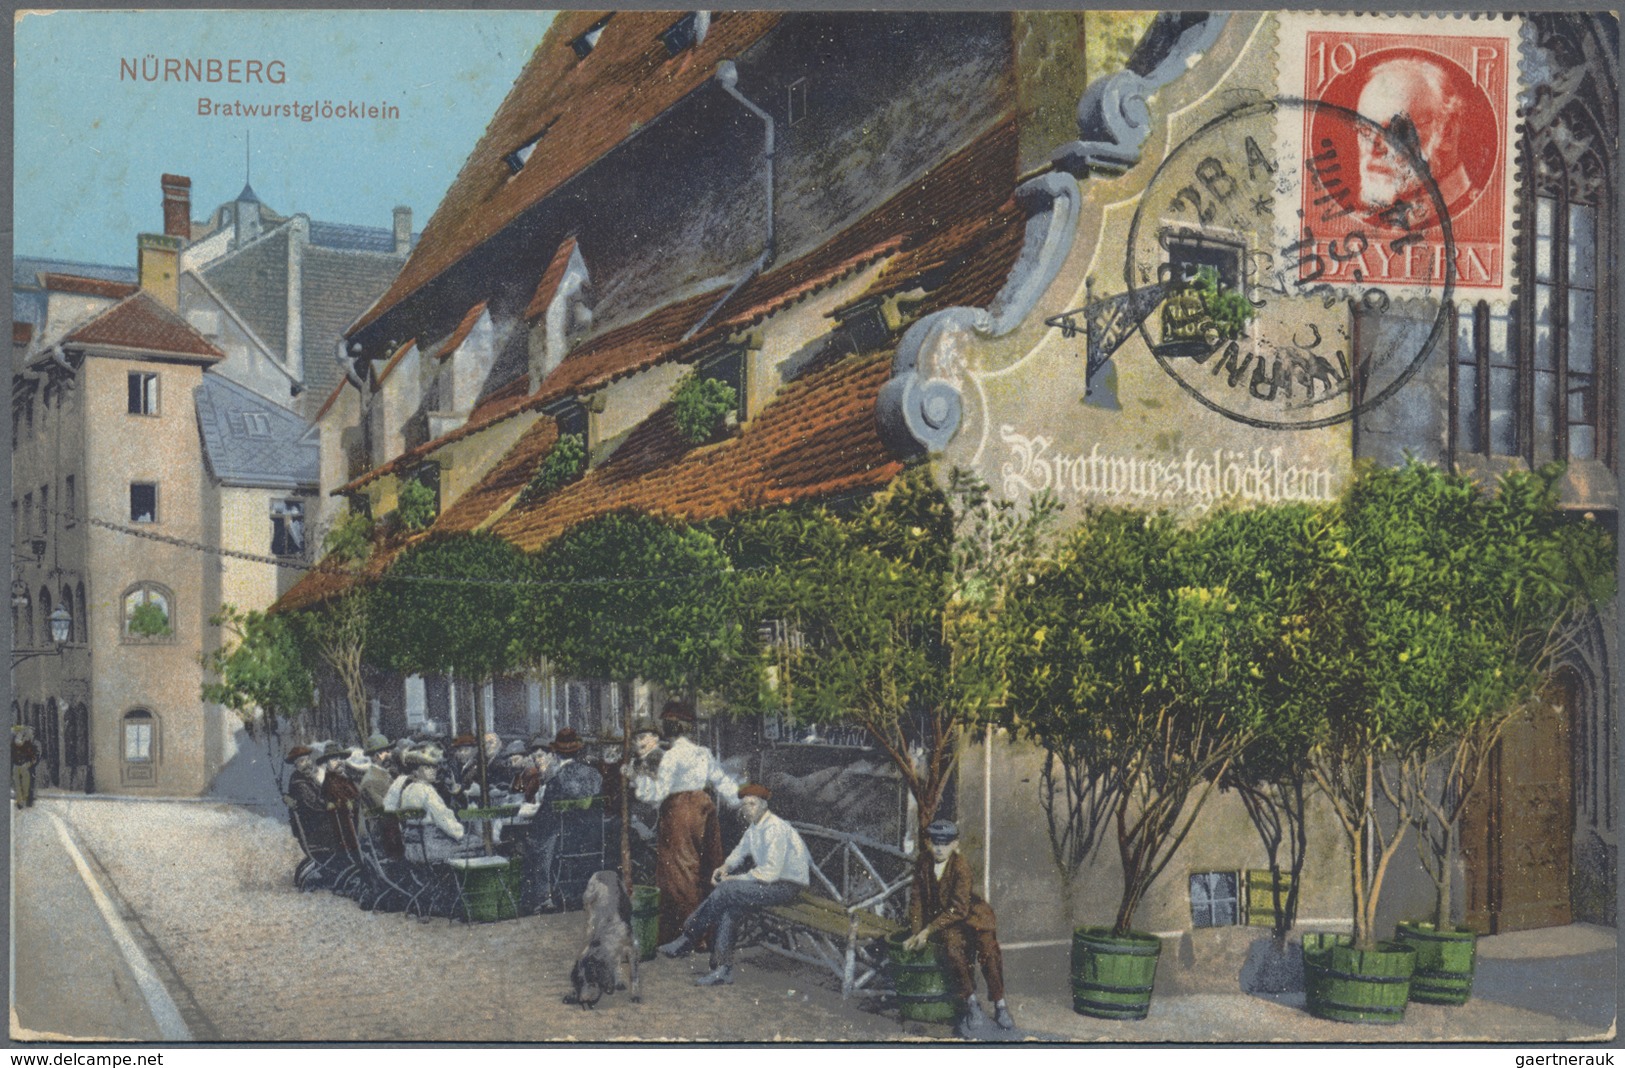 Ansichtskarten: Deutschland: 1900/1940, Partie von ca. 350 Karten meist Deutschland überwiegend in g